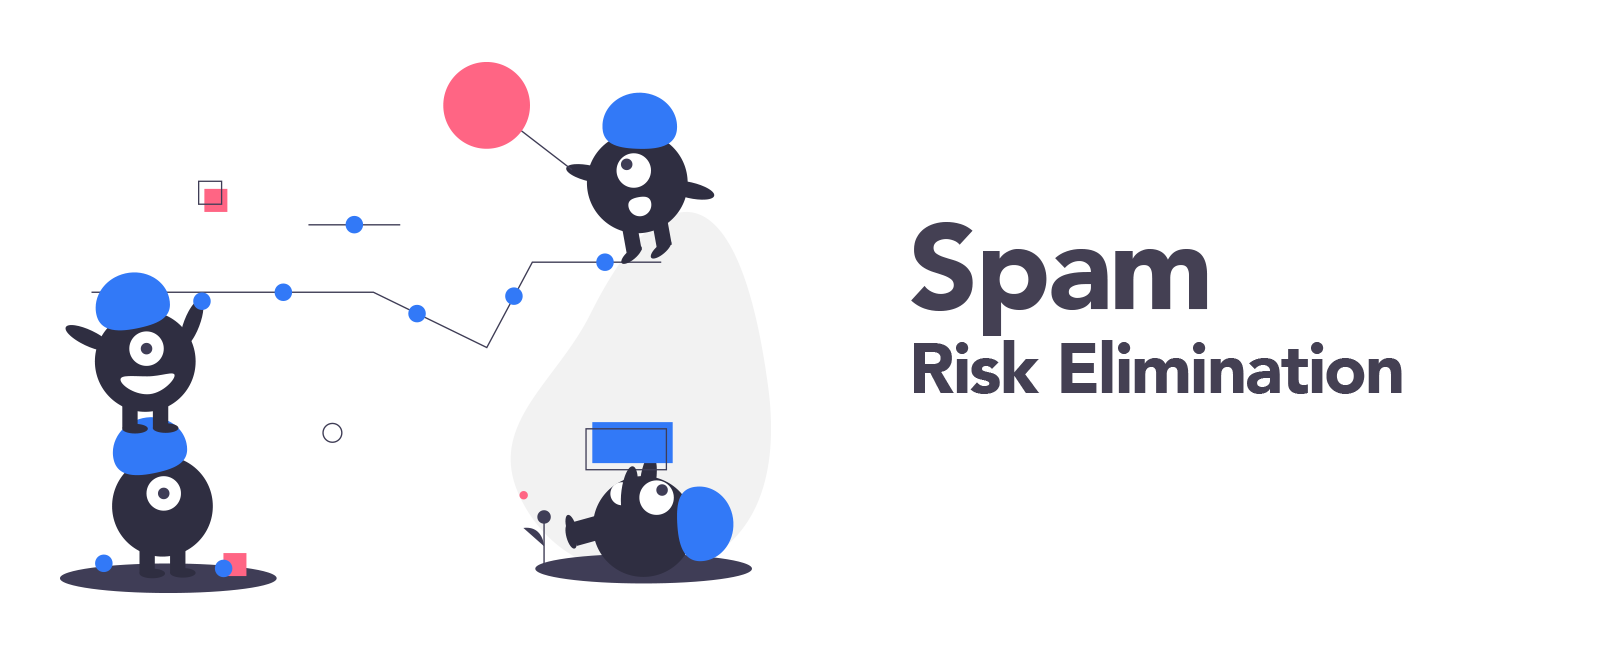 spam risk elimination illustration